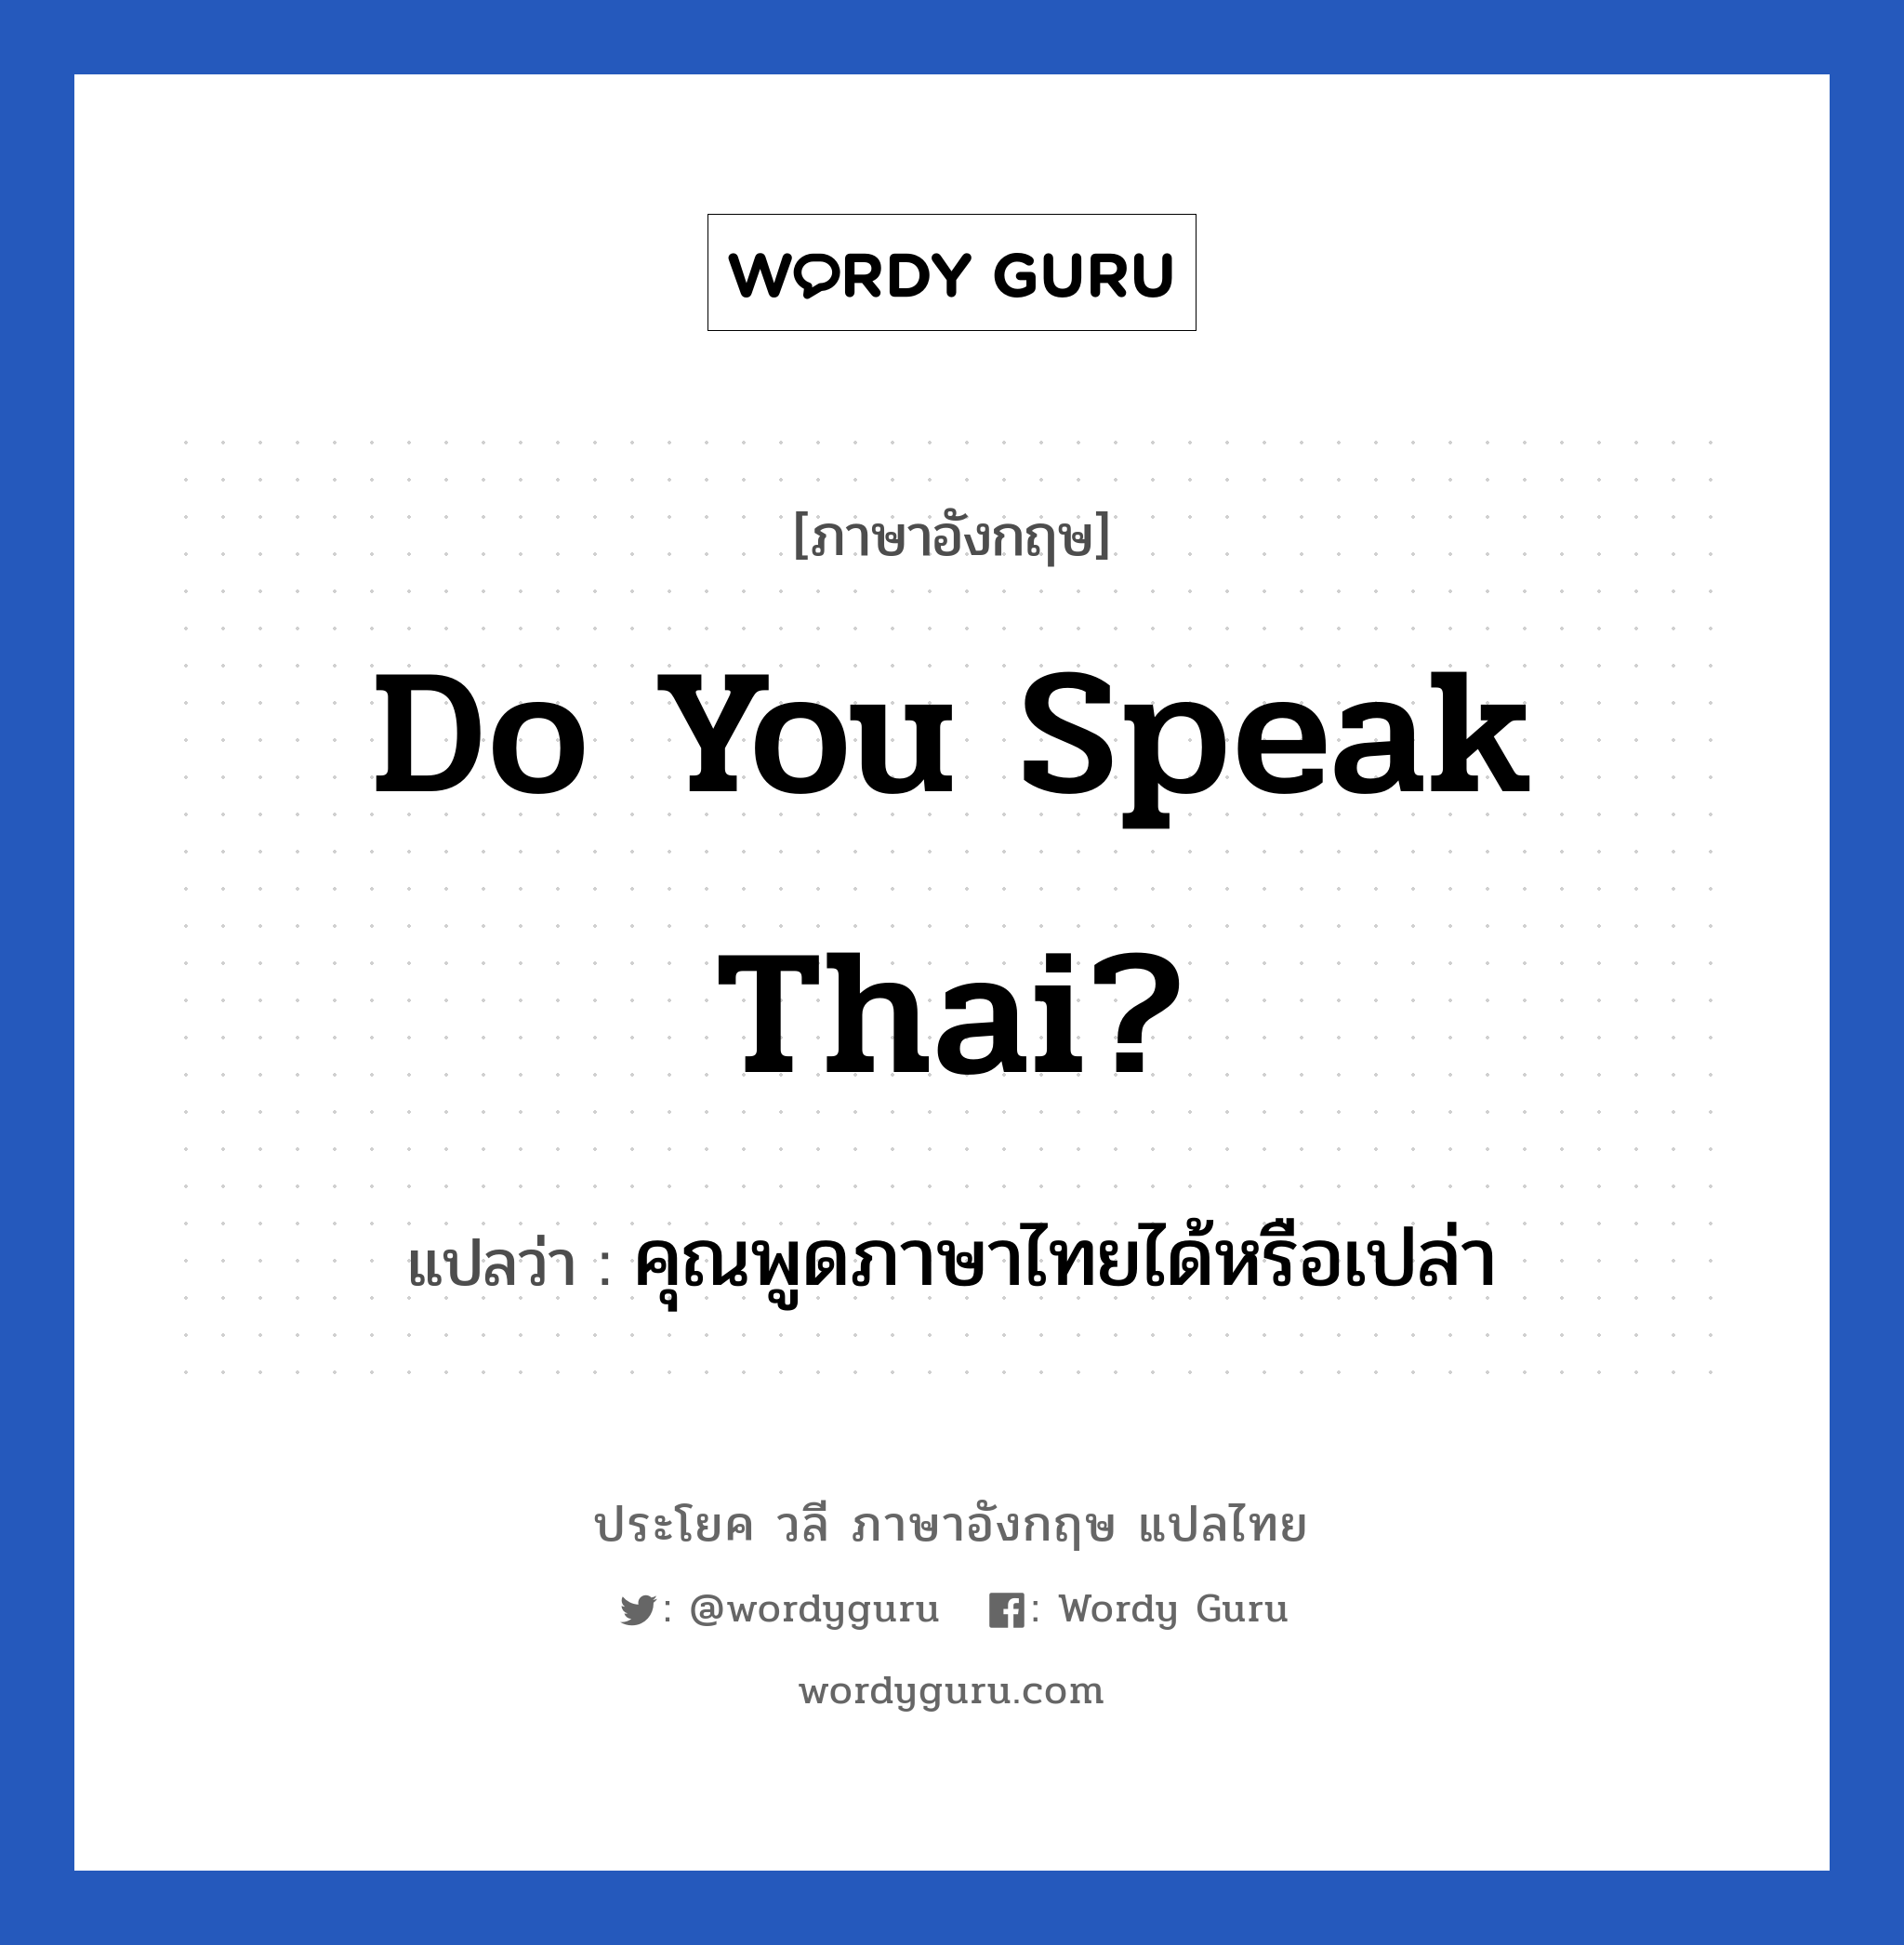 Do You Speak Thai? แปลว่า?, วลีภาษาอังกฤษ Do You Speak Thai? แปลว่า คุณพูดภาษาไทยได้หรือเปล่า